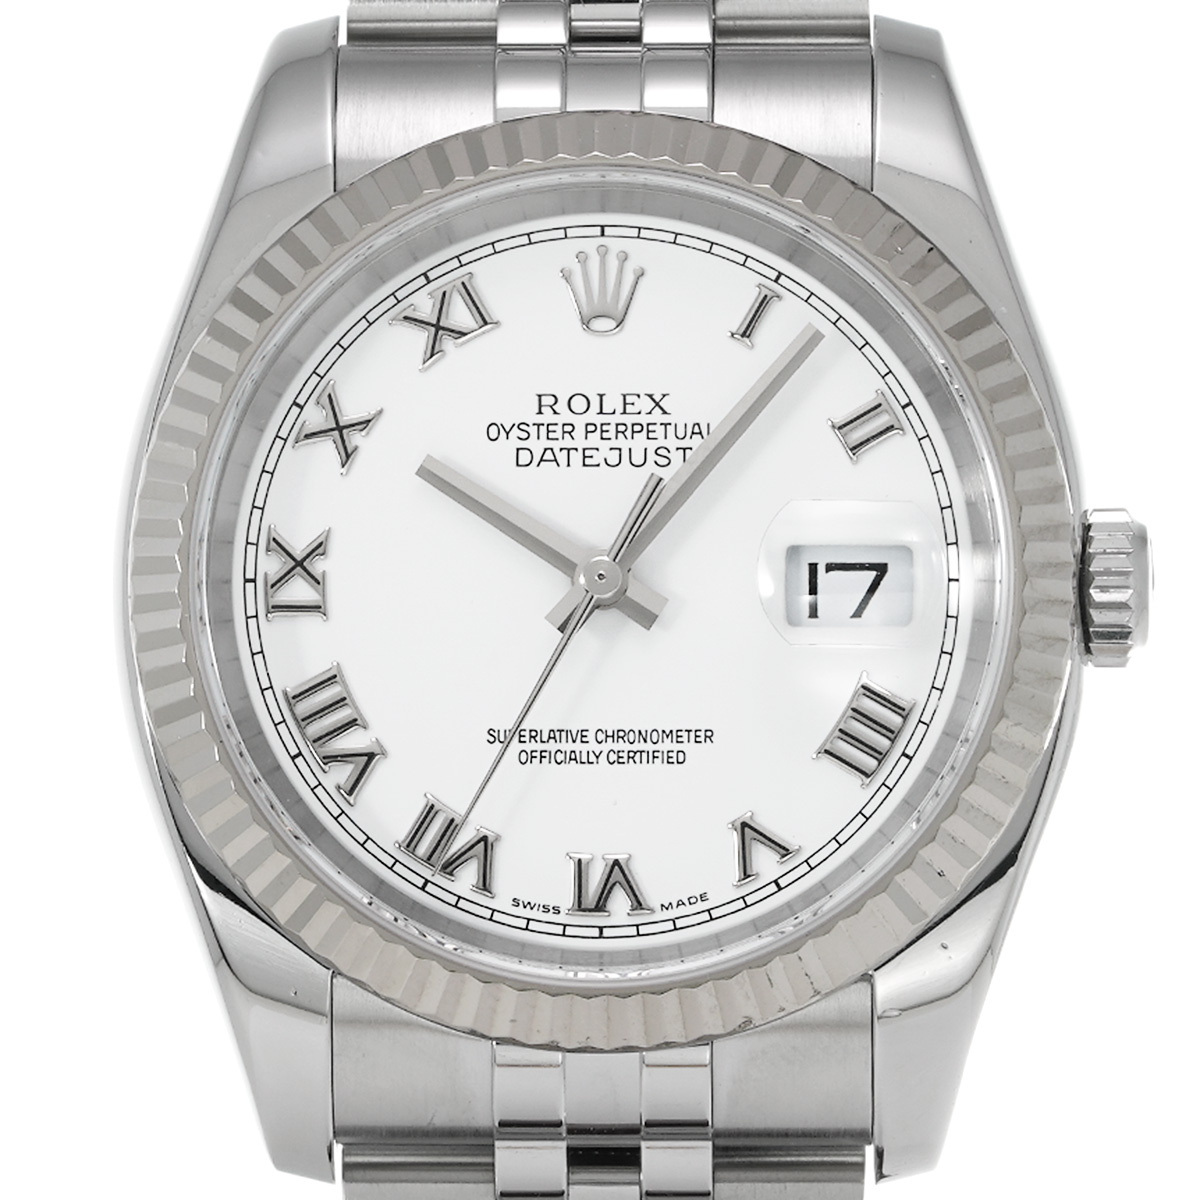 ロレックス ROLEX 116234 D番(2005年頃製造) ホワイト メンズ 腕時計